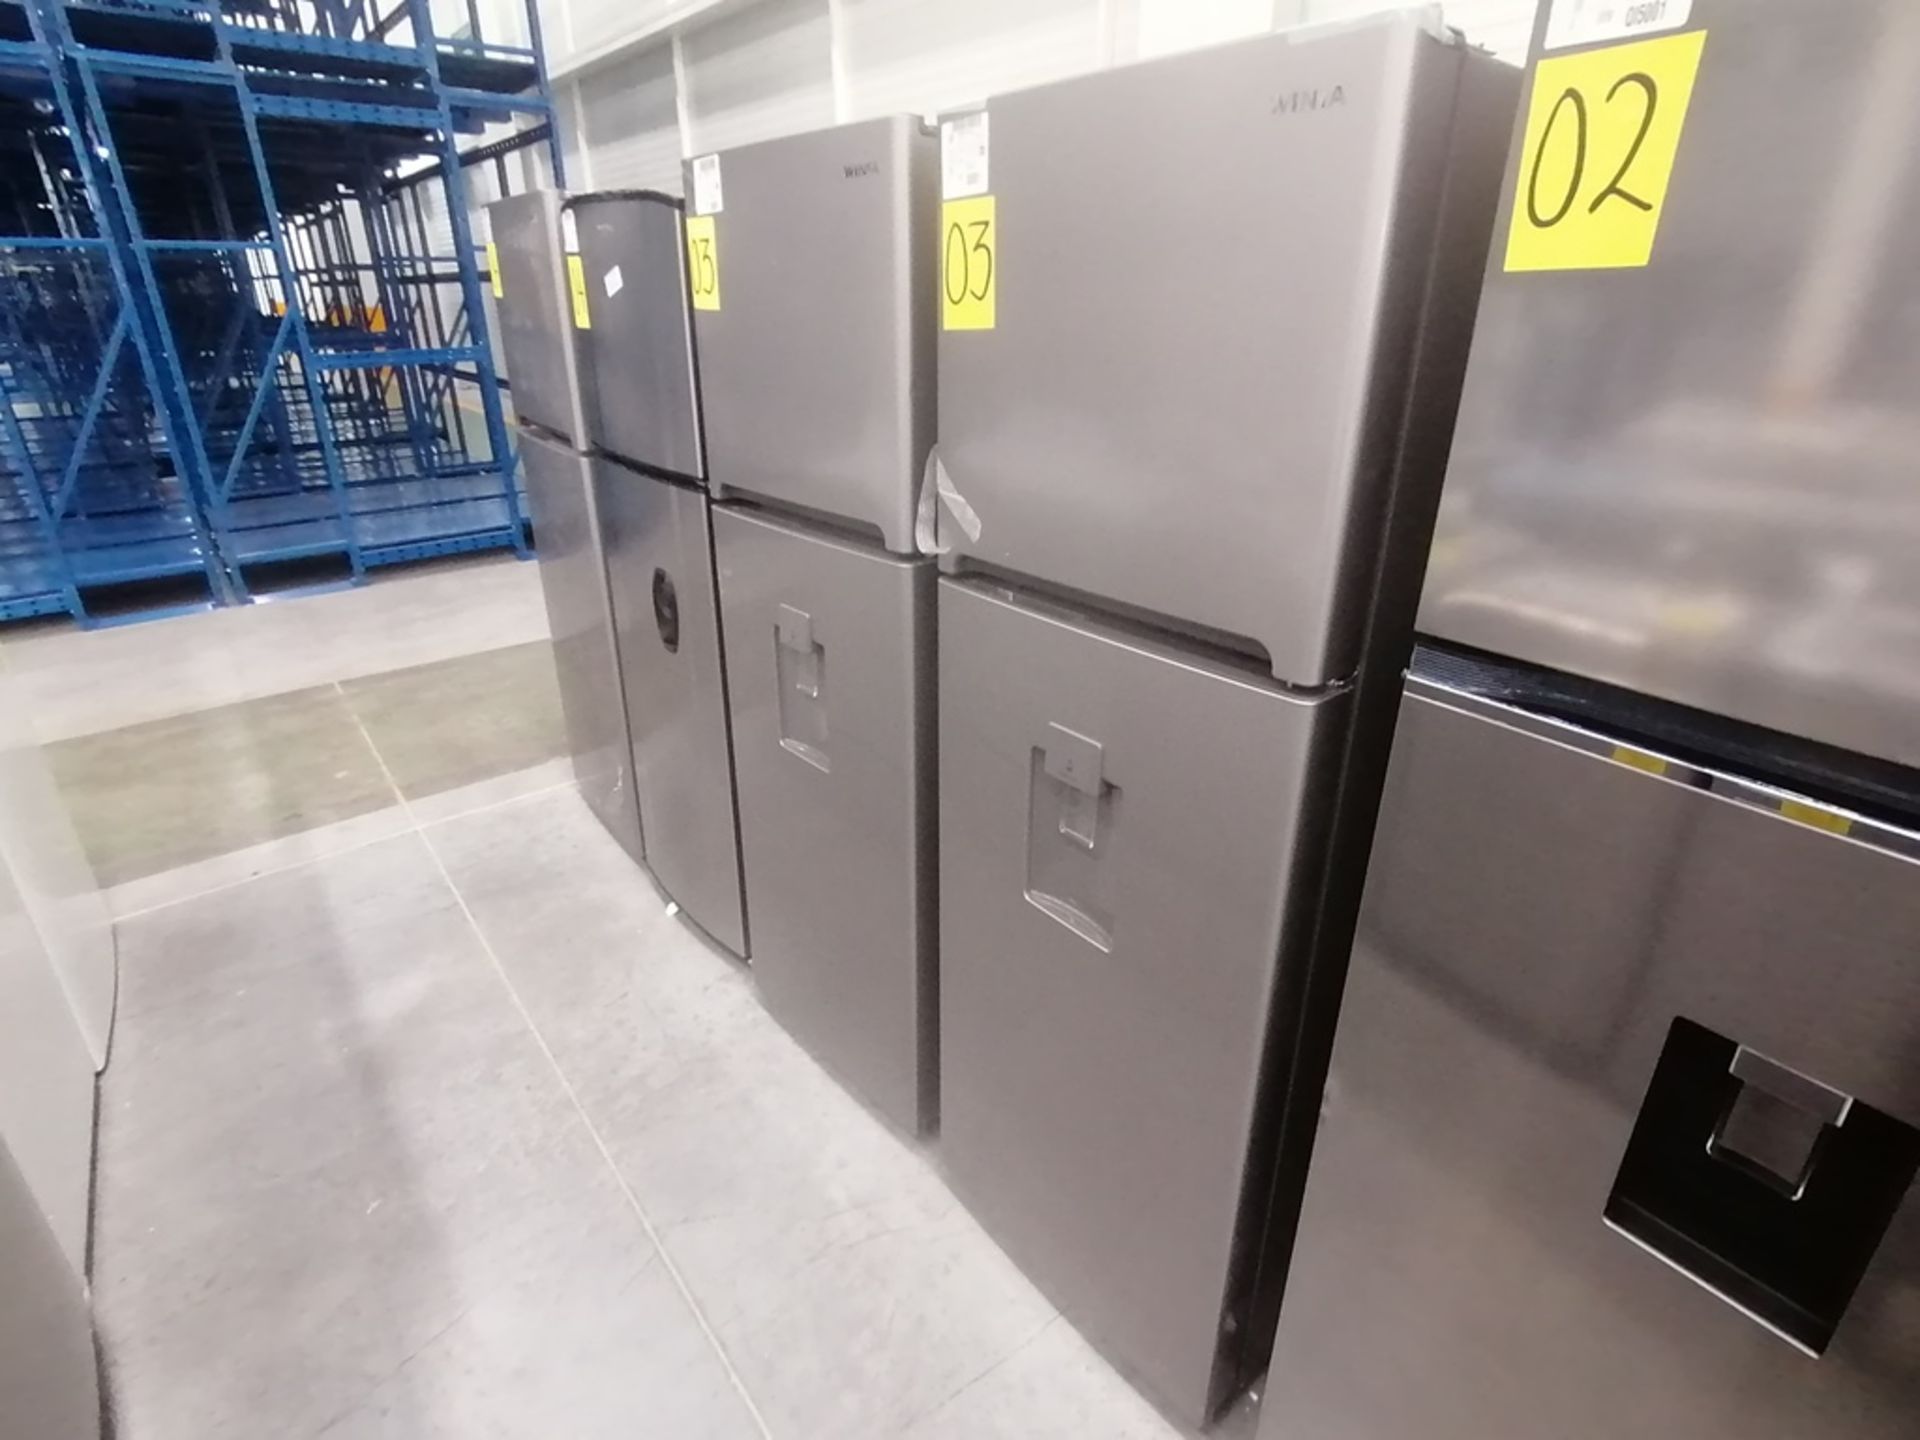 Lote de 2 refrigeradores incluye: 1 Refrigerador con dispensador de agua, Marca Winia, Modelo DFR32 - Image 2 of 15